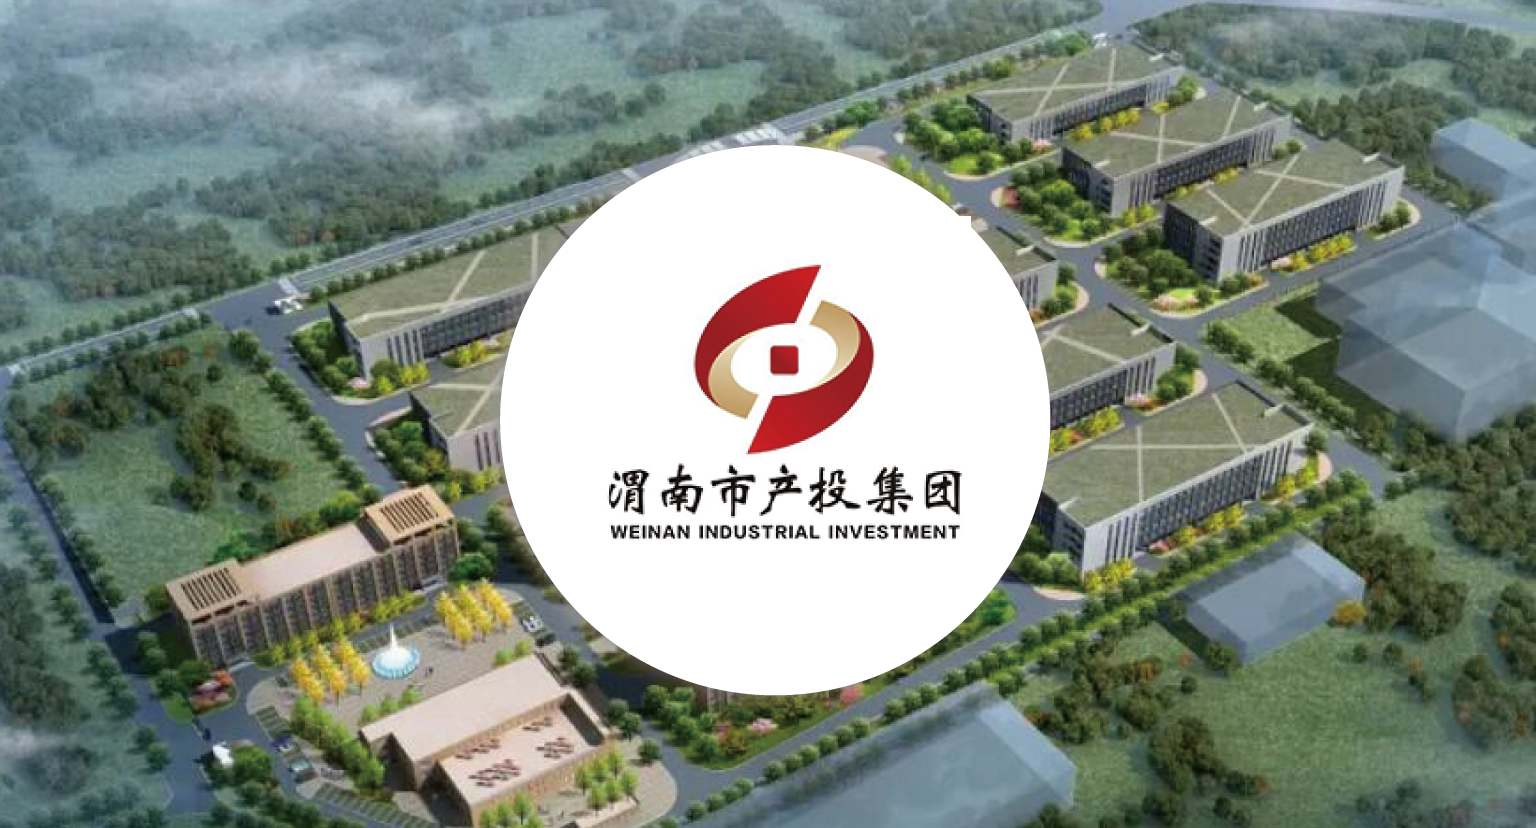 渭南市产业投资开发集团有限公司资金管理建设项目